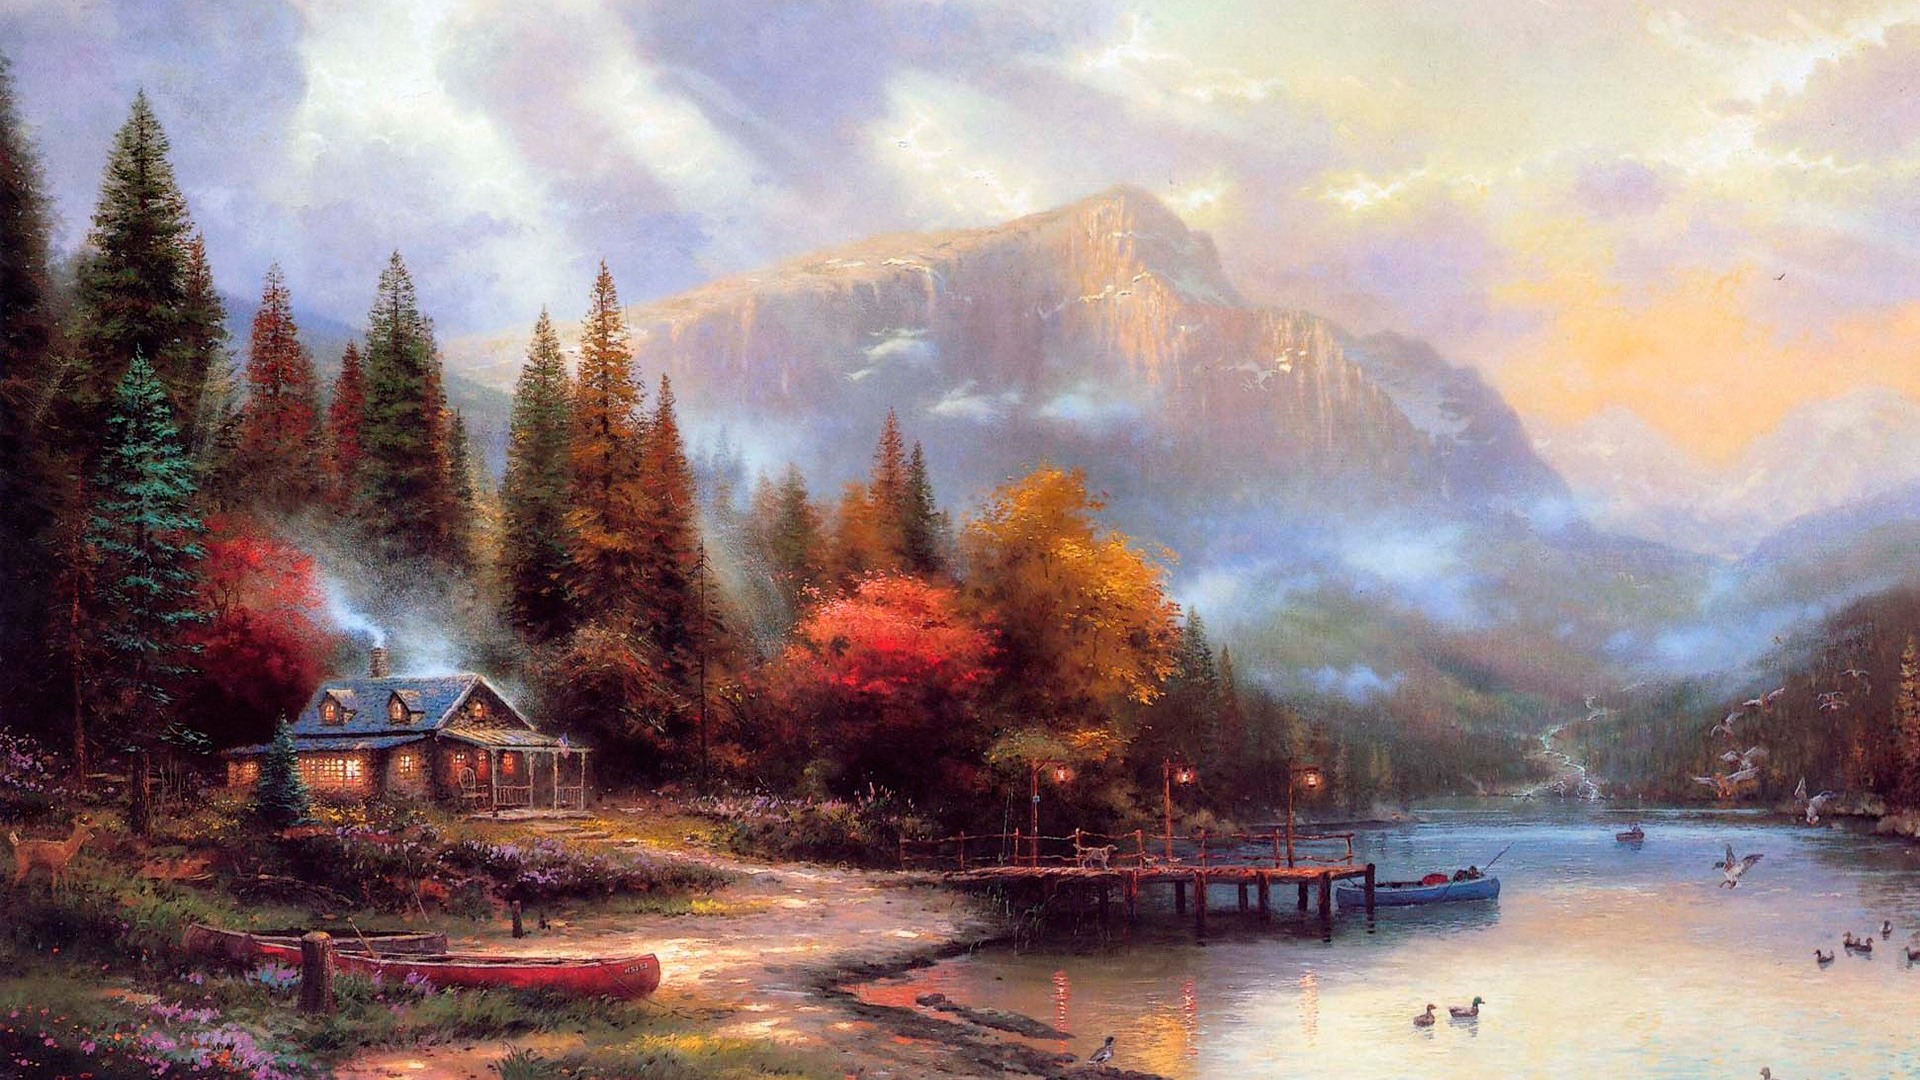 Thomas Kinkade Autumn Paintings, scene, winter, nature, abstract